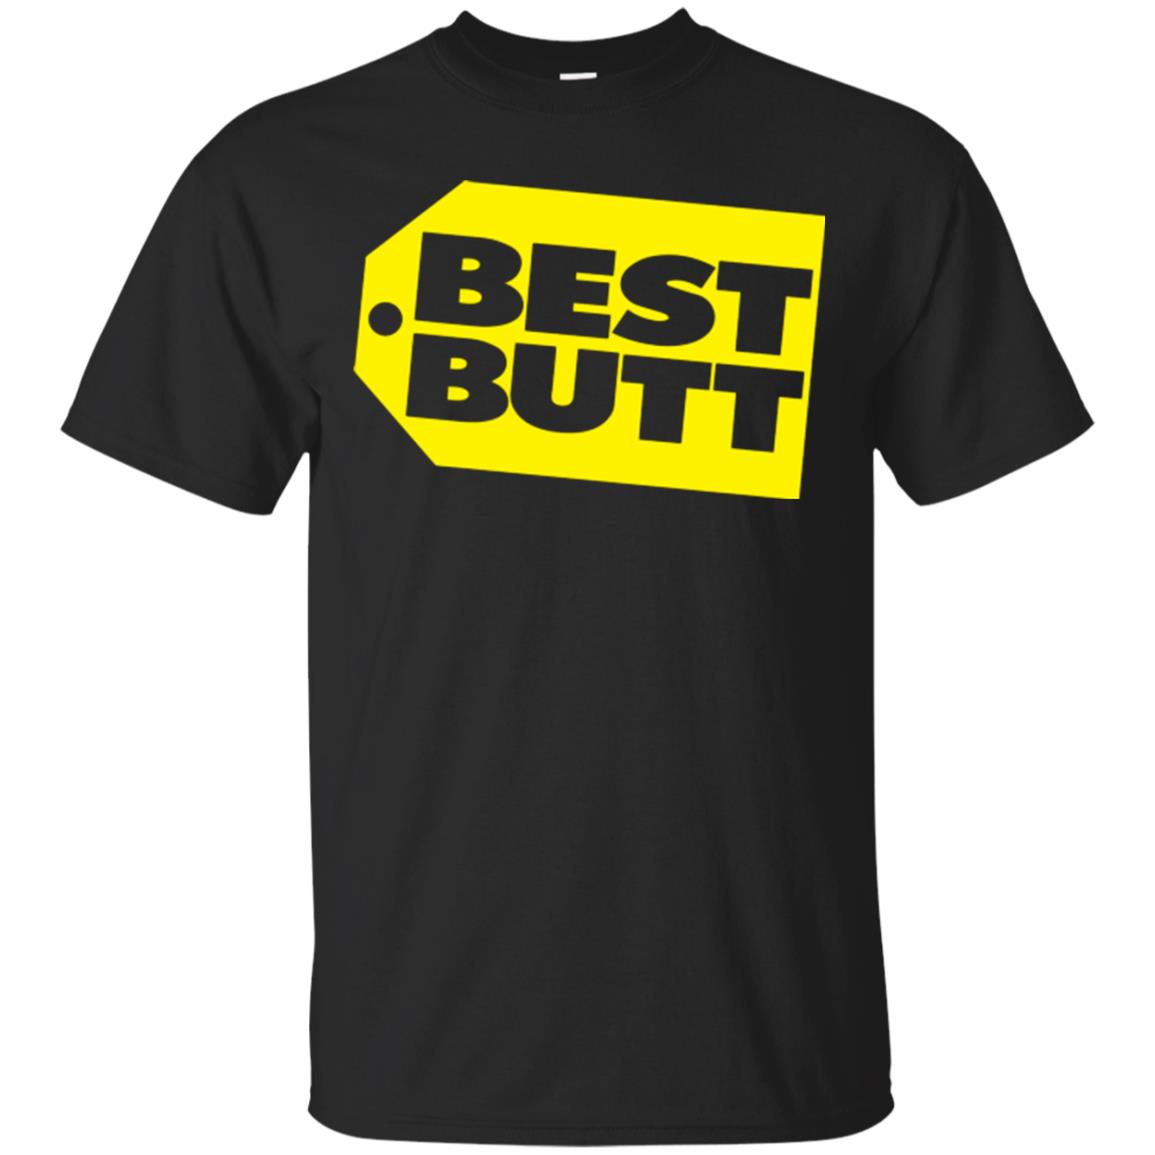 Best Butt